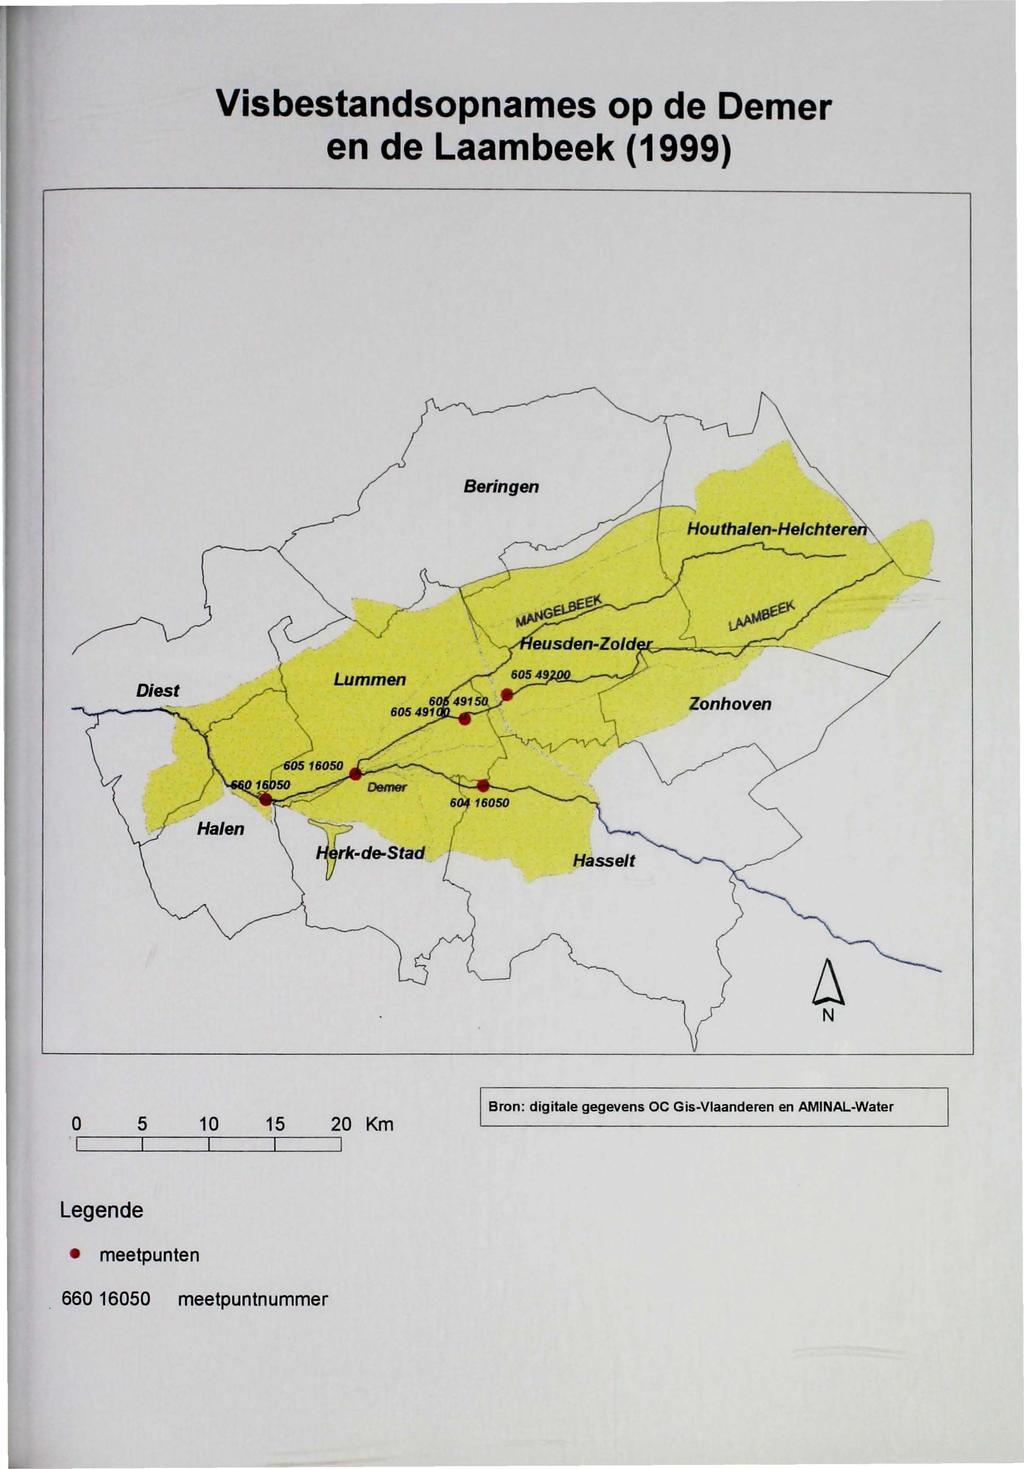 Visbestandsopnames op de Demer en delaambeek (1999) Beringen Hasselt N 0 5 10 15 20 Km Bron: